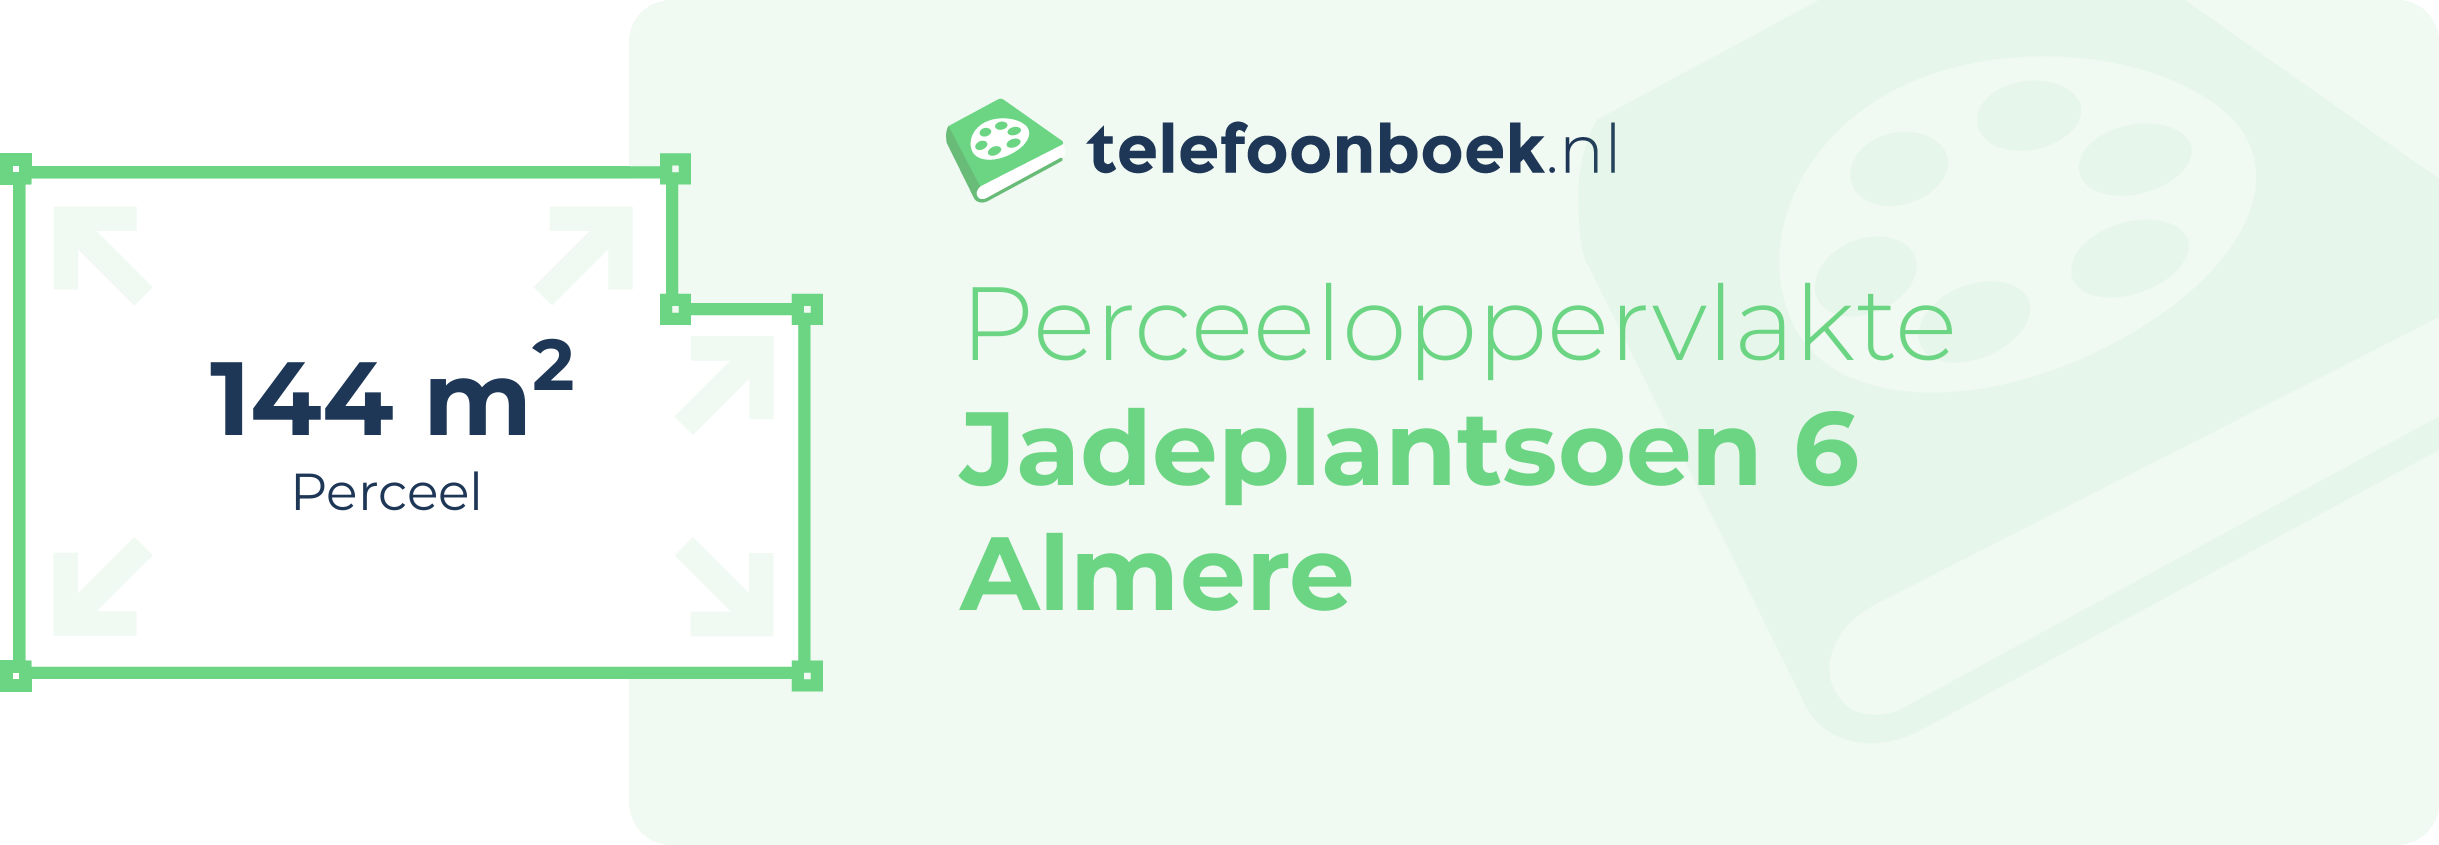 Perceeloppervlakte Jadeplantsoen 6 Almere